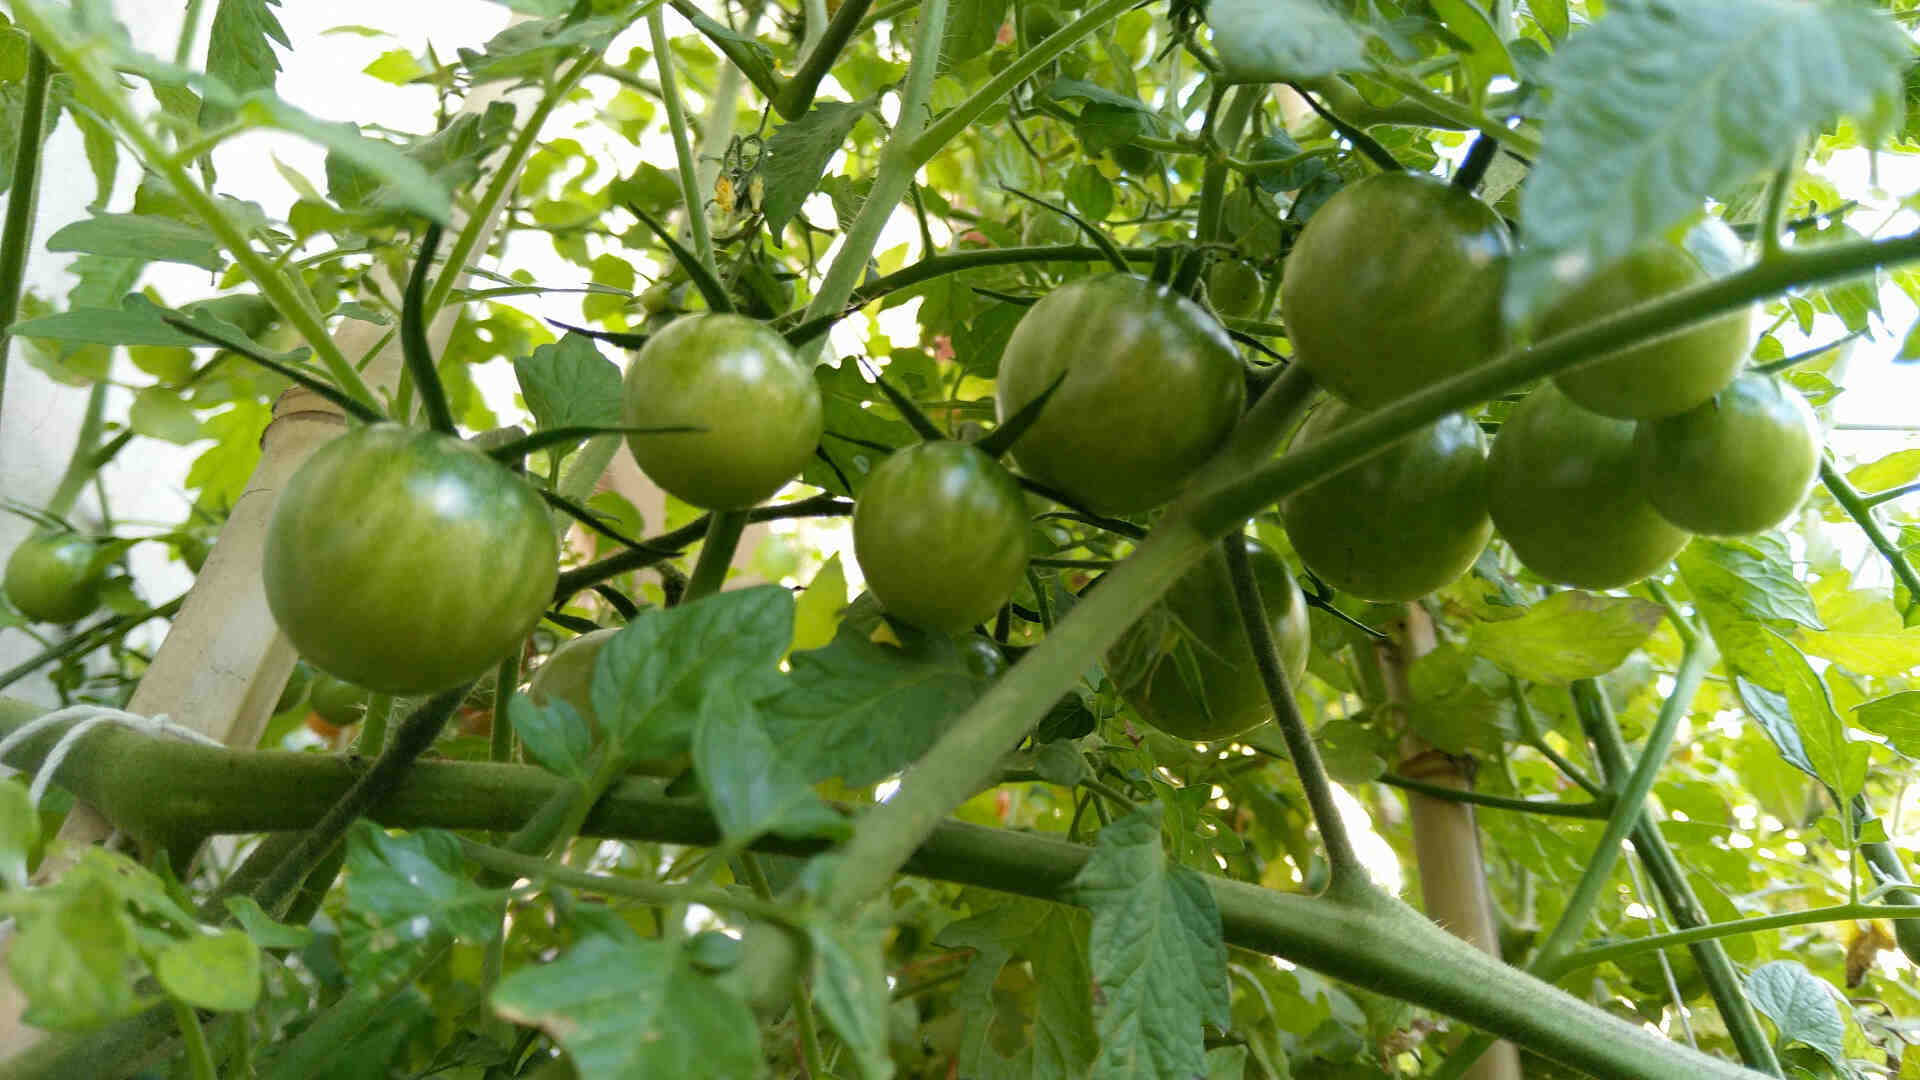 Comment réduire la maturation des tomates?